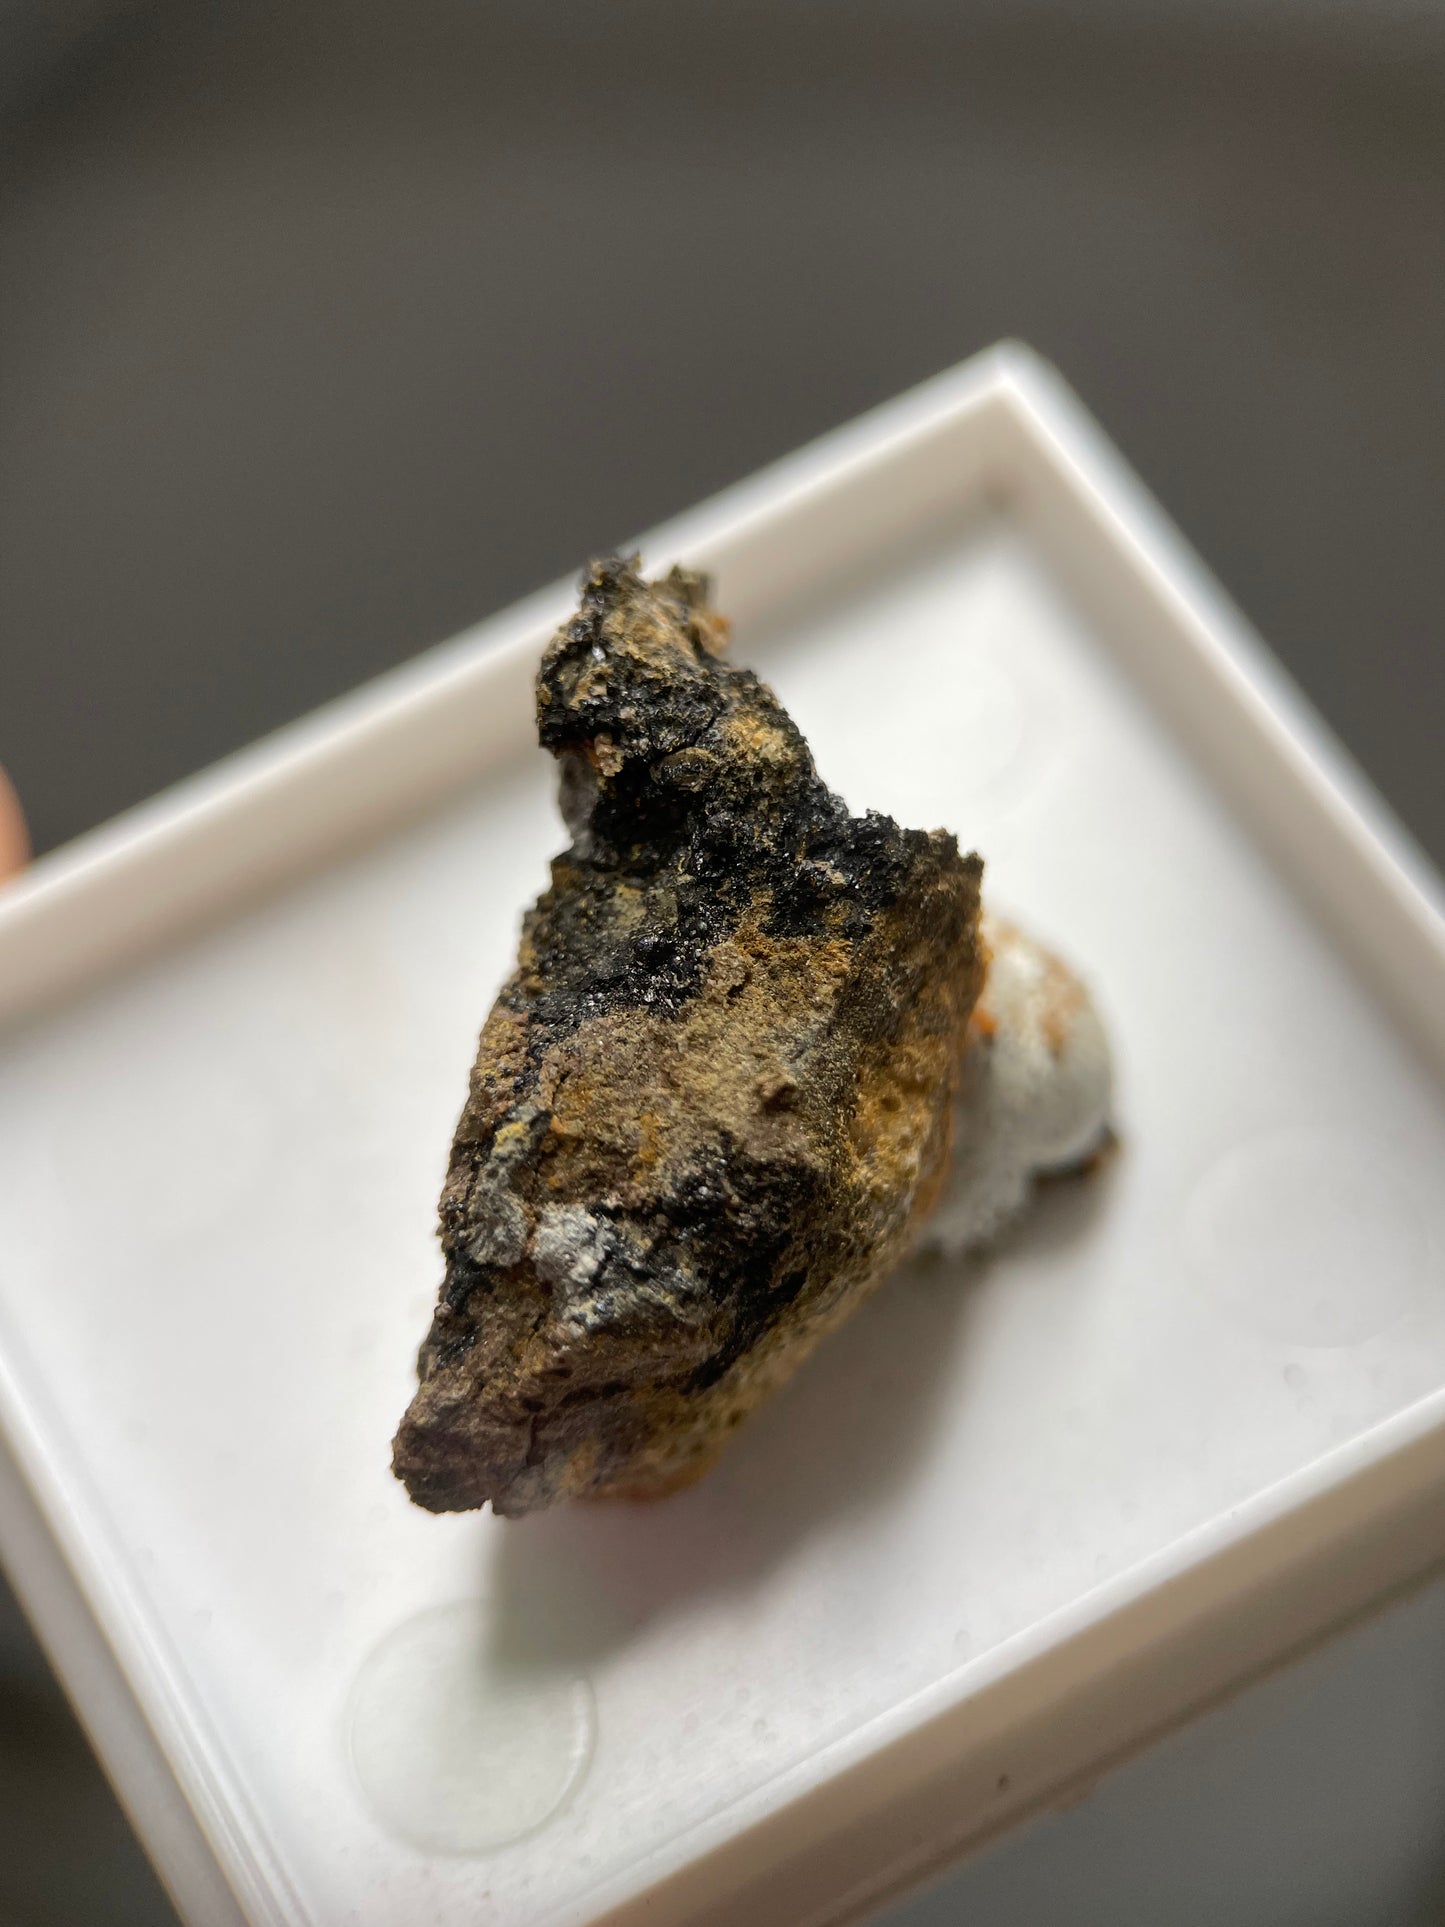 Native Gold in Uraninite